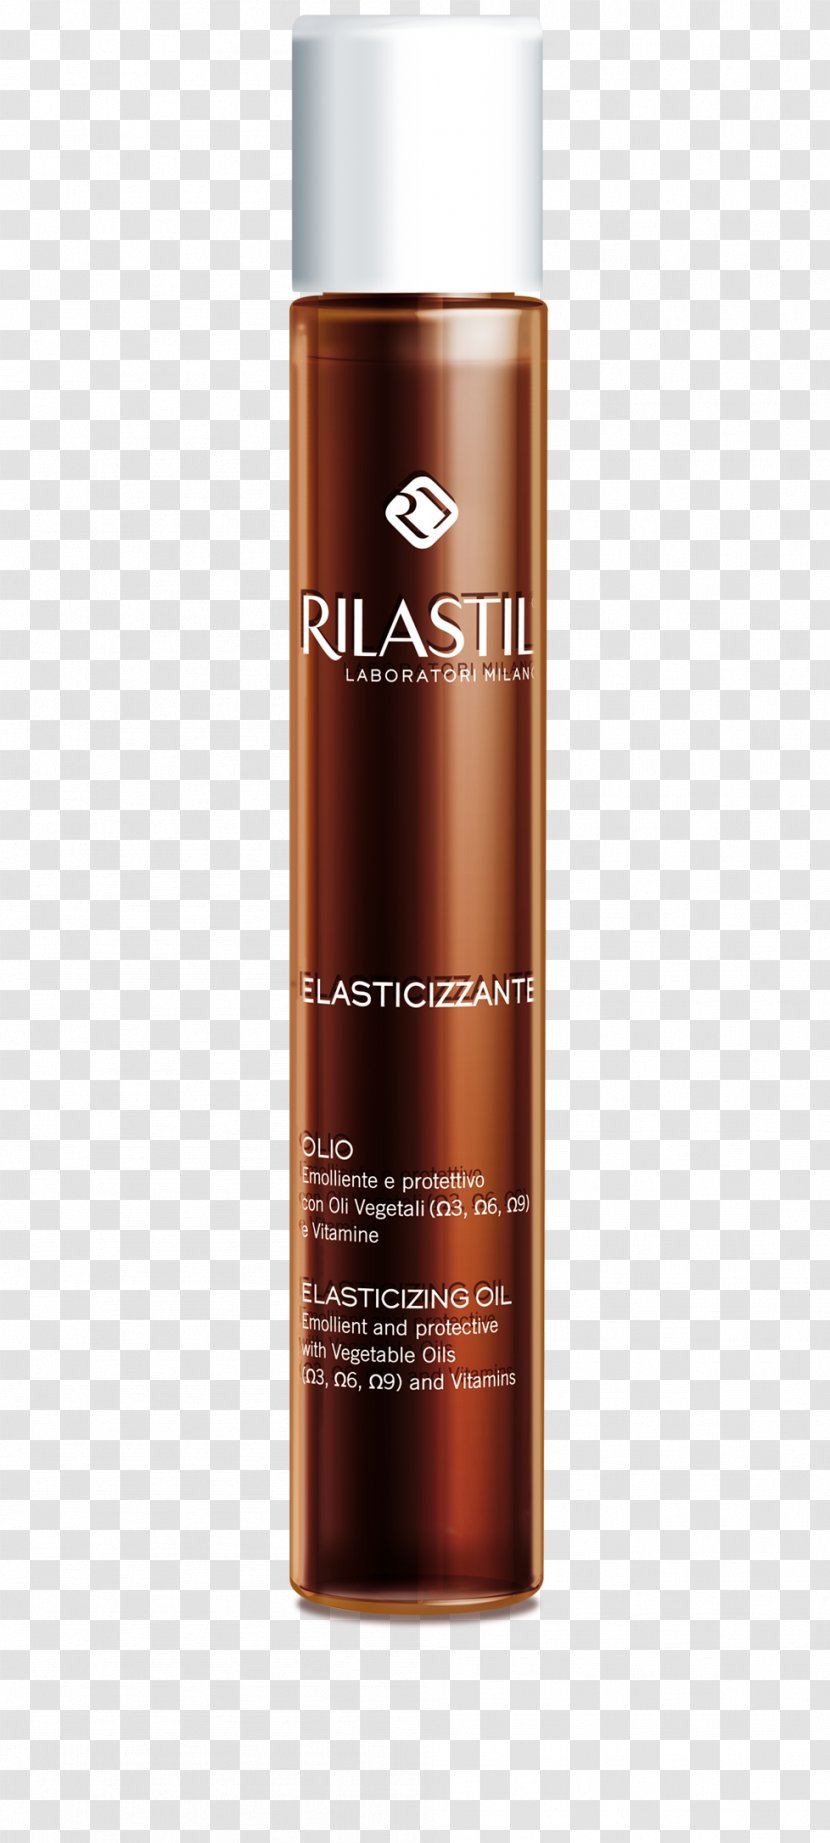 Oil Rilastil Elasticizing Cream Skin Price - Liquid Transparent PNG